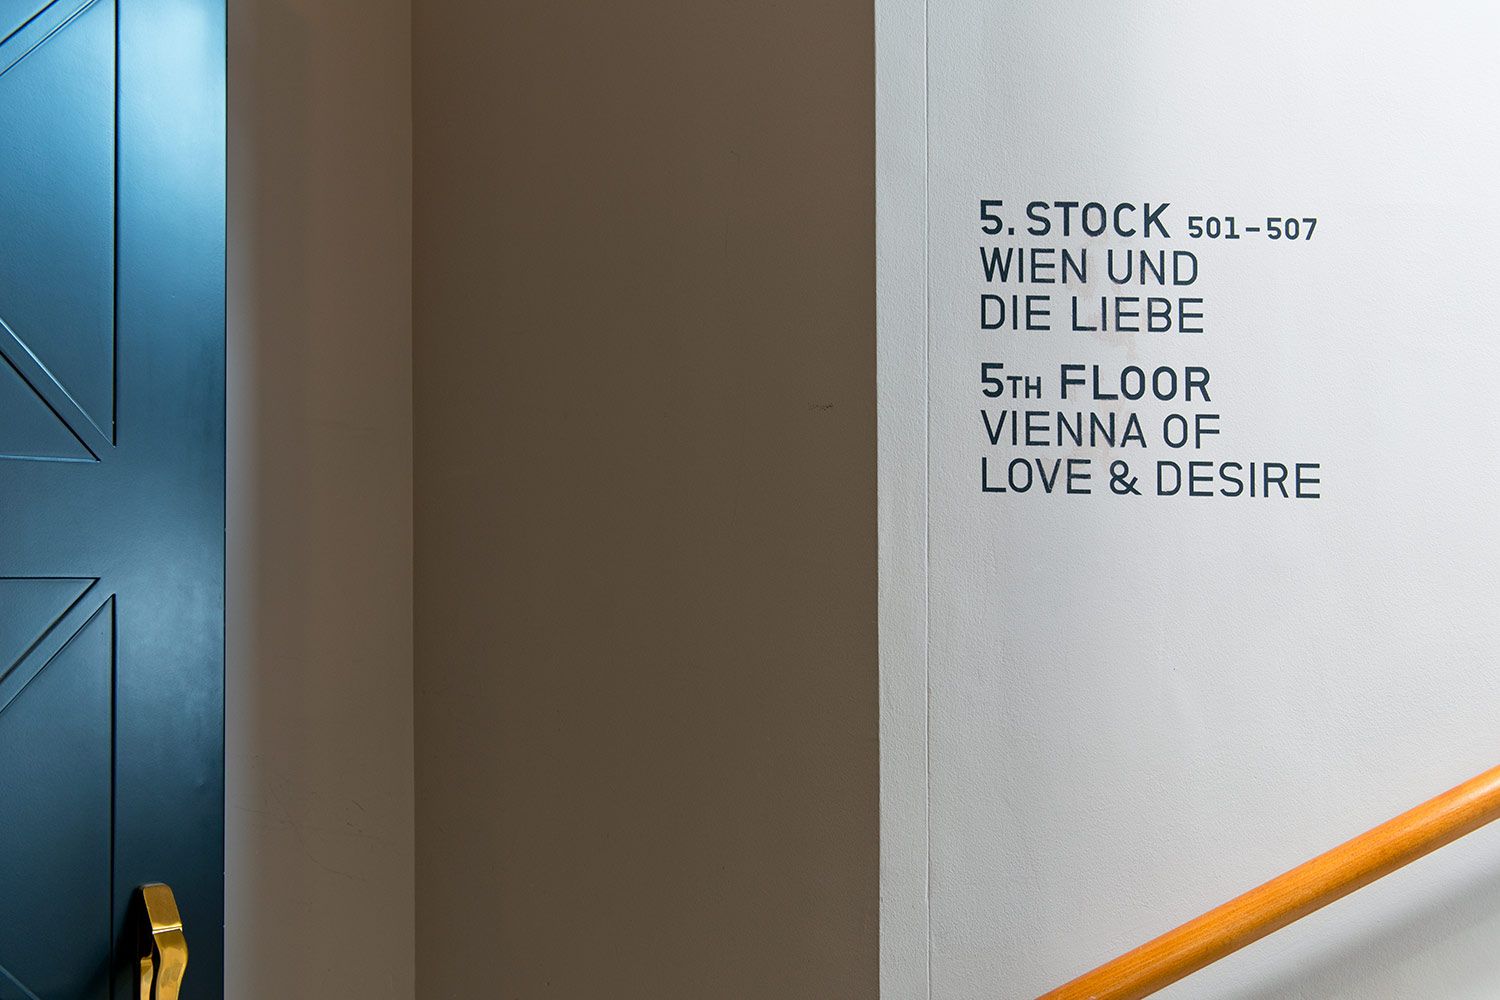 Wien und der Liebe ist eine eigene Etage gewidmet